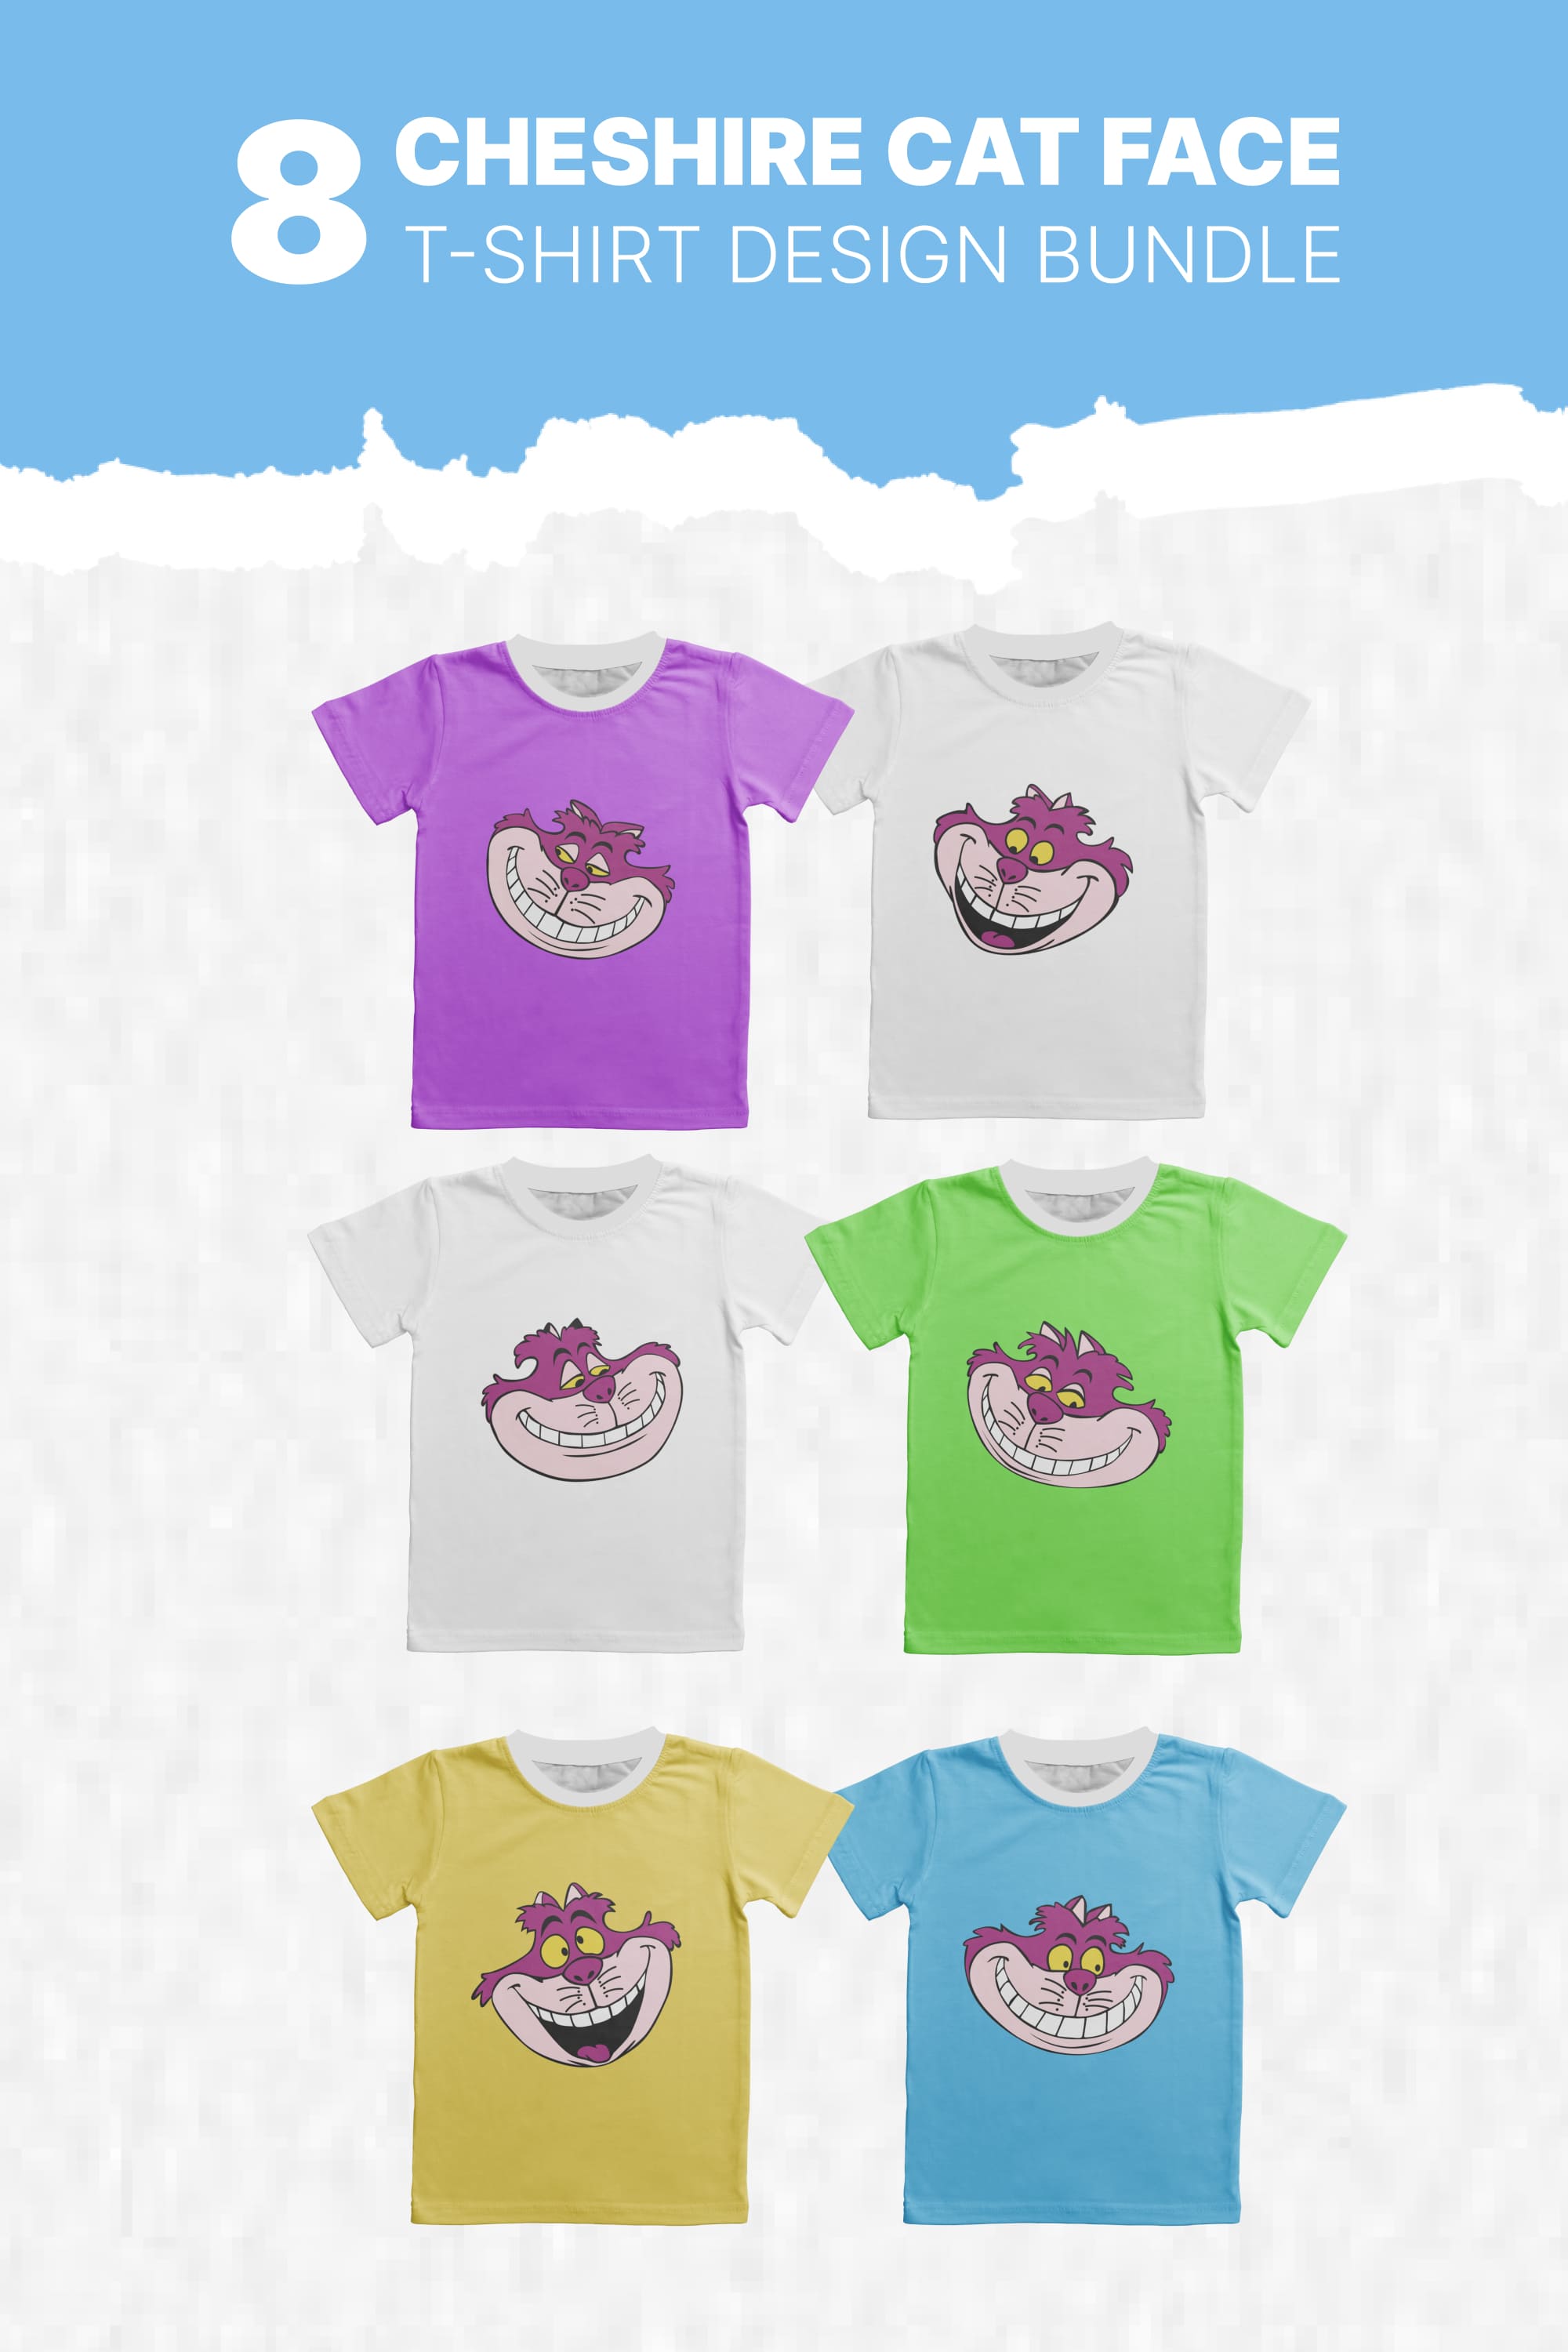 Cheshire Cat Face T-shirt Designs Bundle - Pinterest.